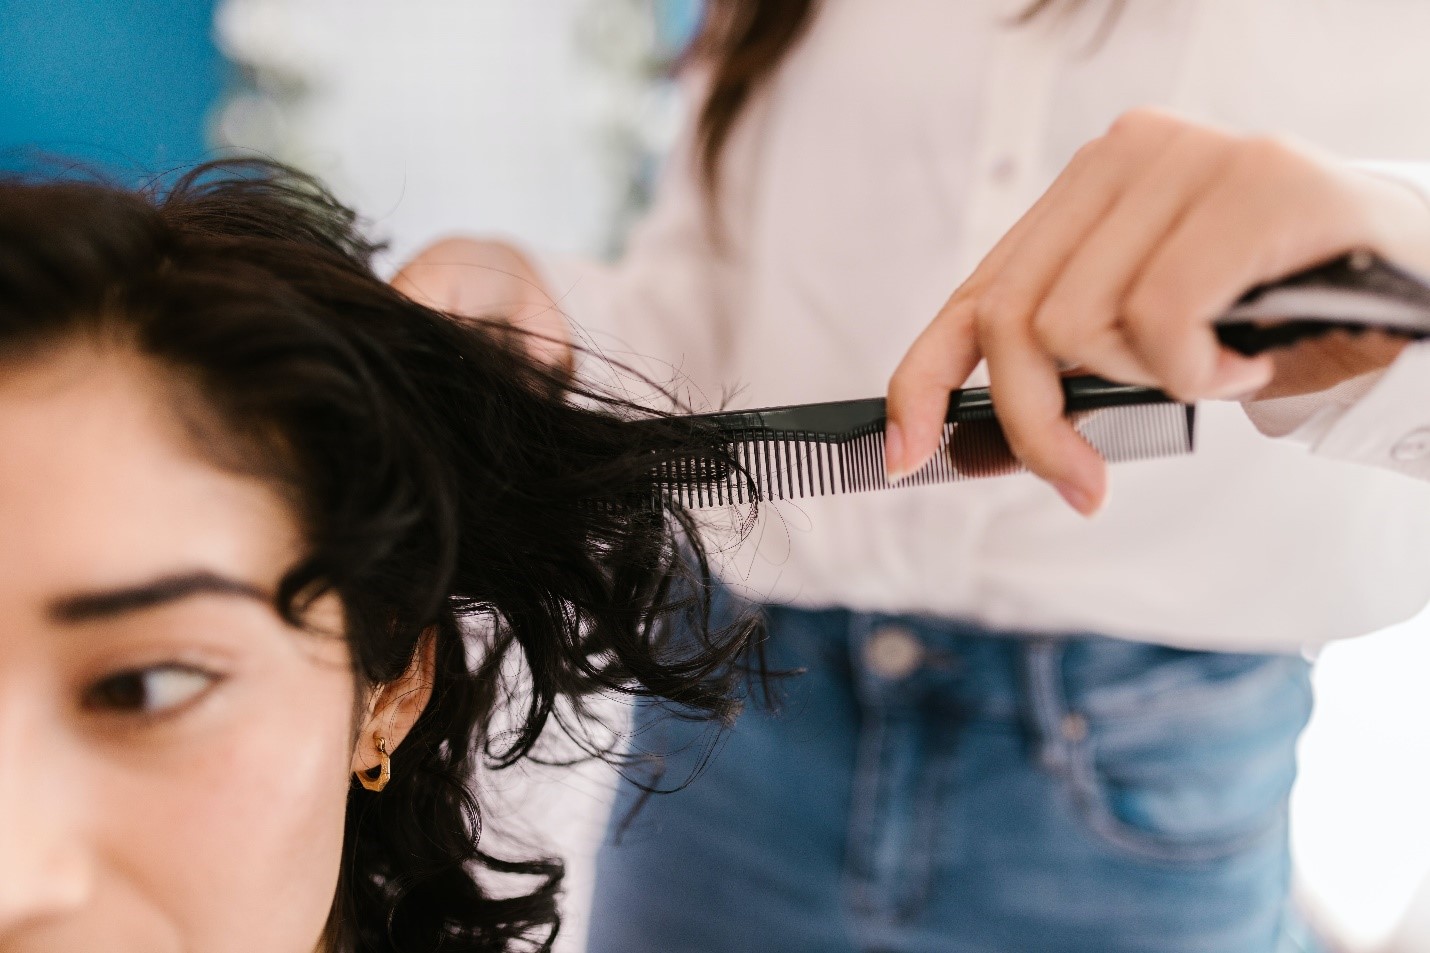 רגע לפני שאתן הולכות להסתפר: למה כדאי לתרום שיער?